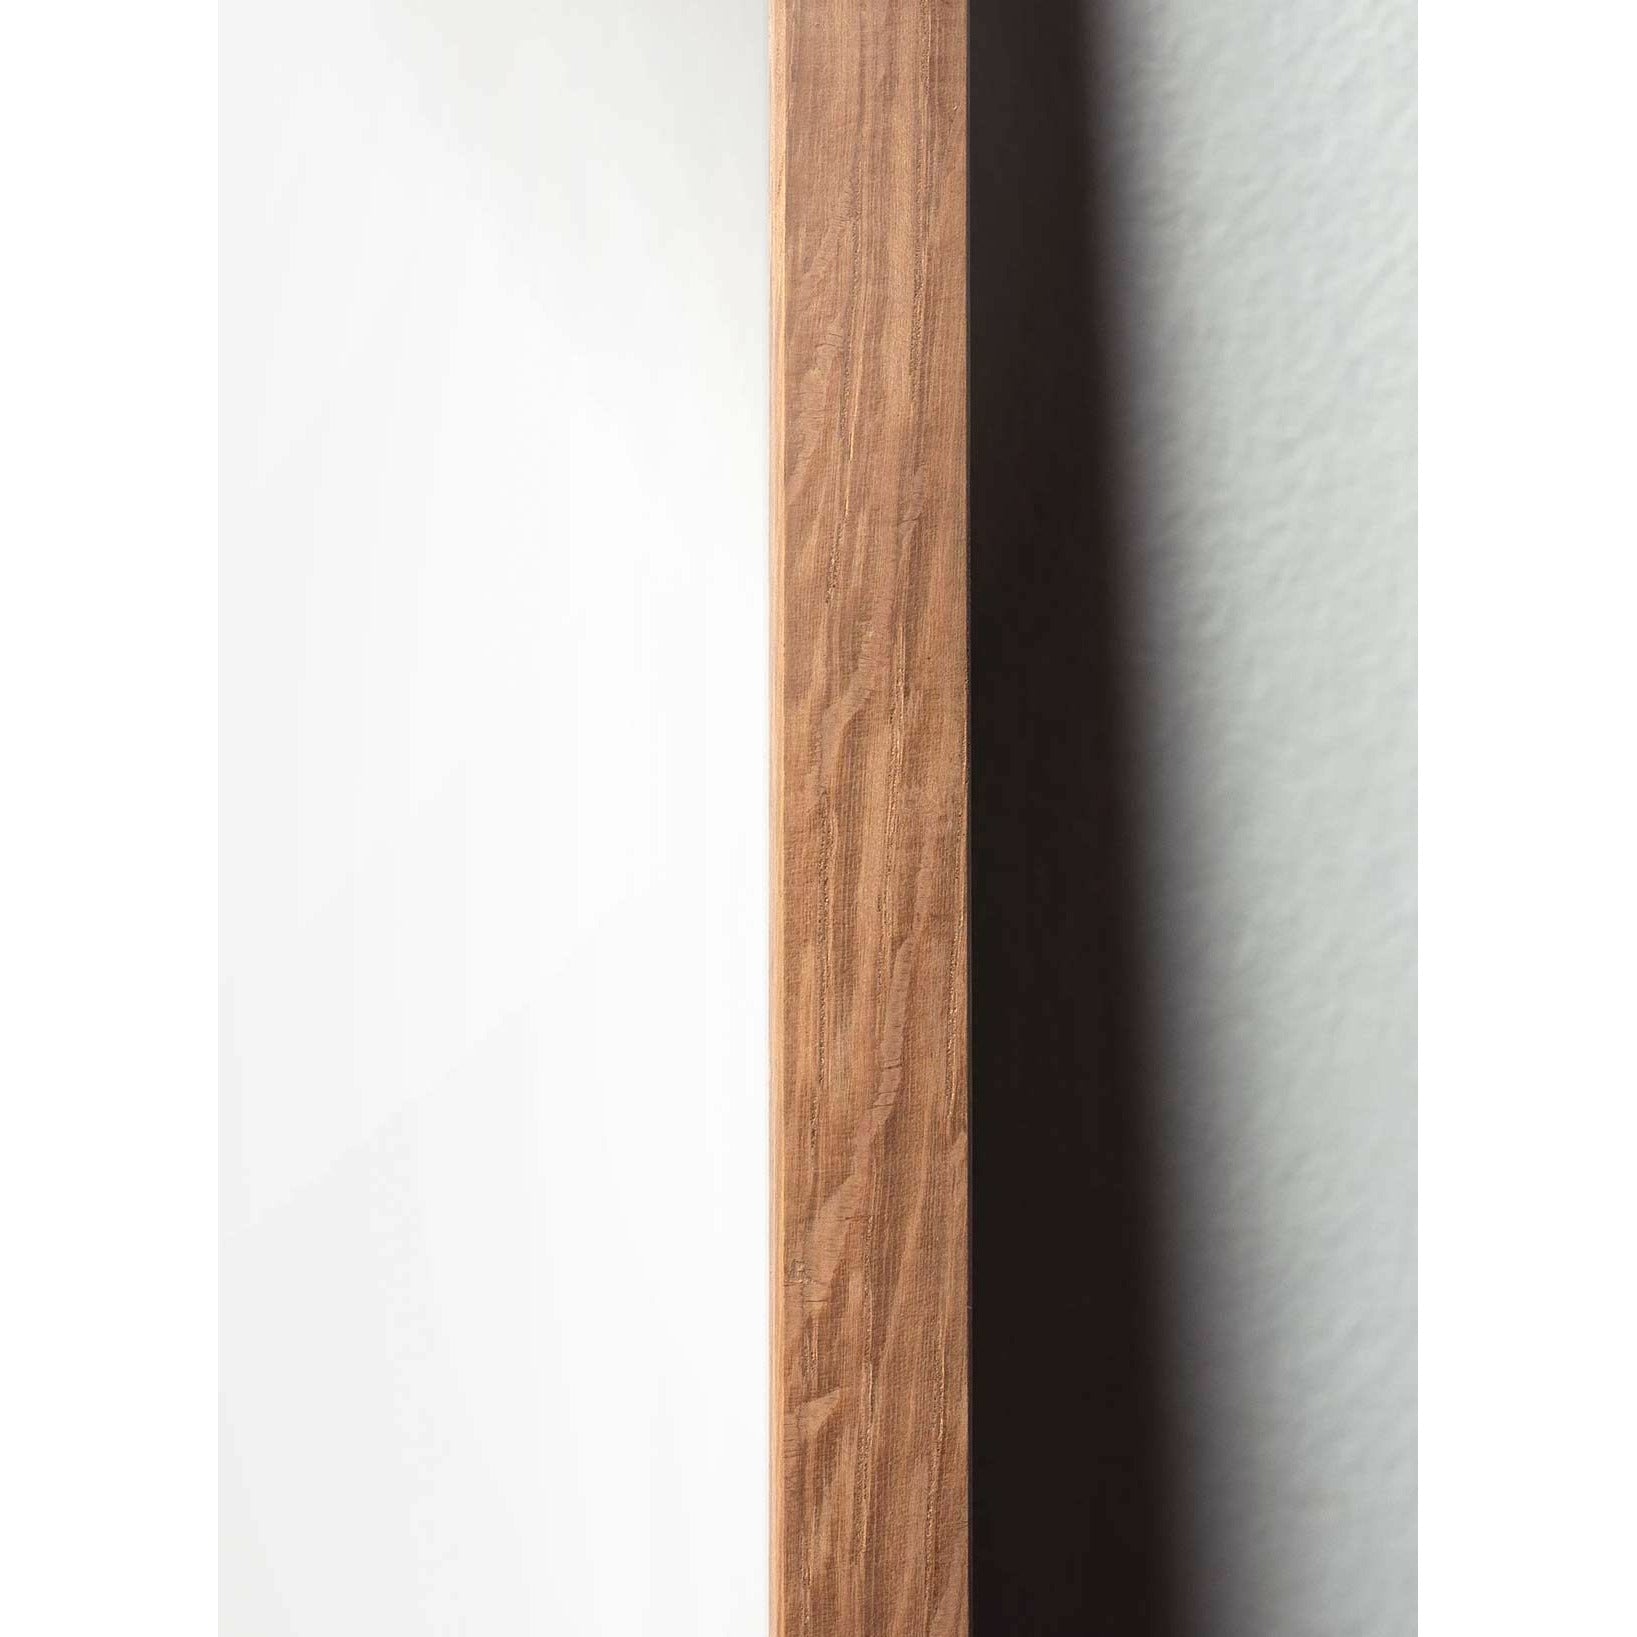 Póster de diseño de diseño de oso de peluche de creación, marco hecho de madera clara A5, gris